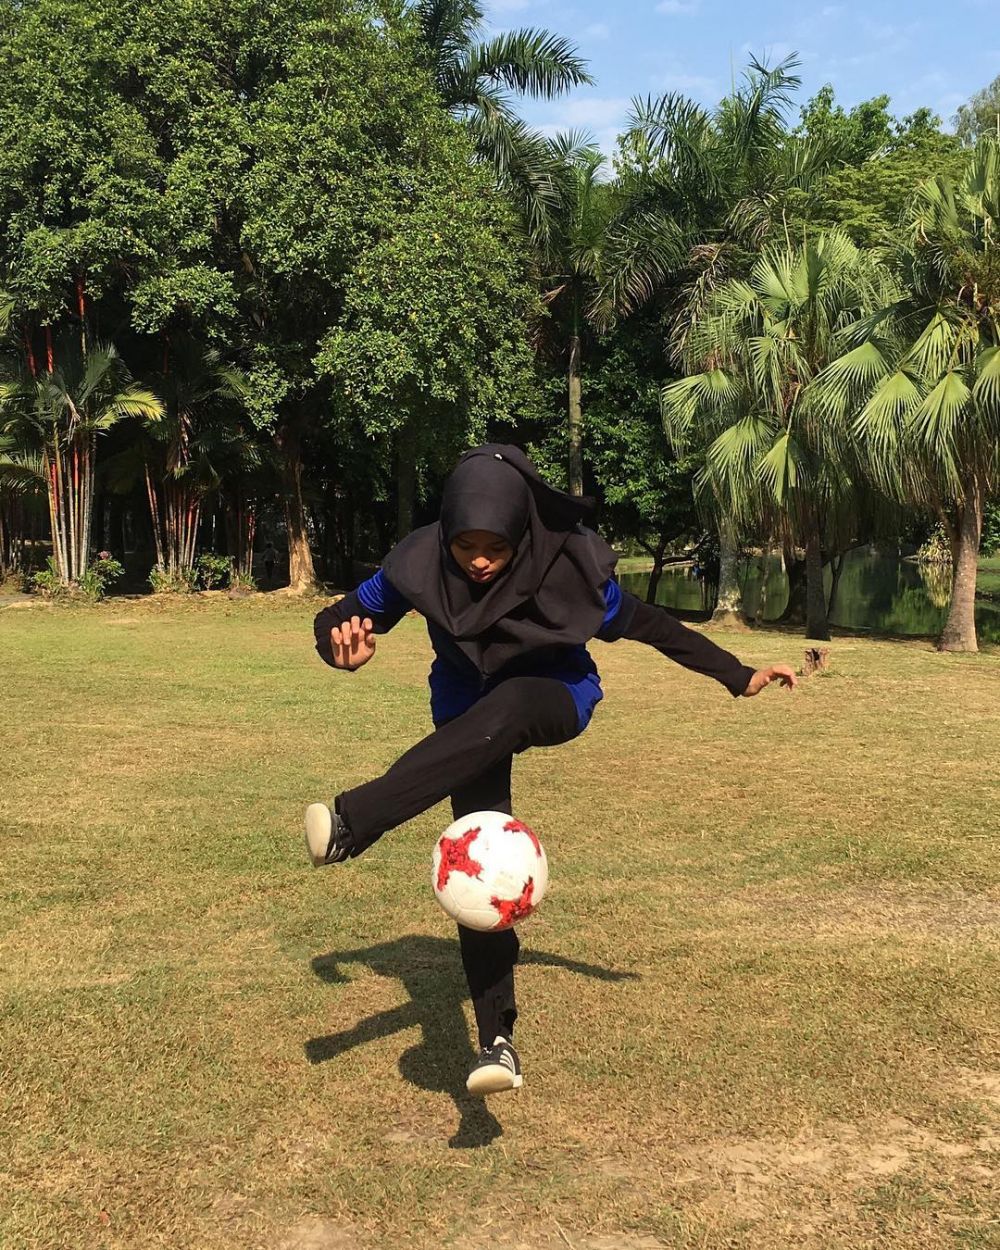 12 Pesona Qhouirunnisa, hijaber yang jago freestyle bola